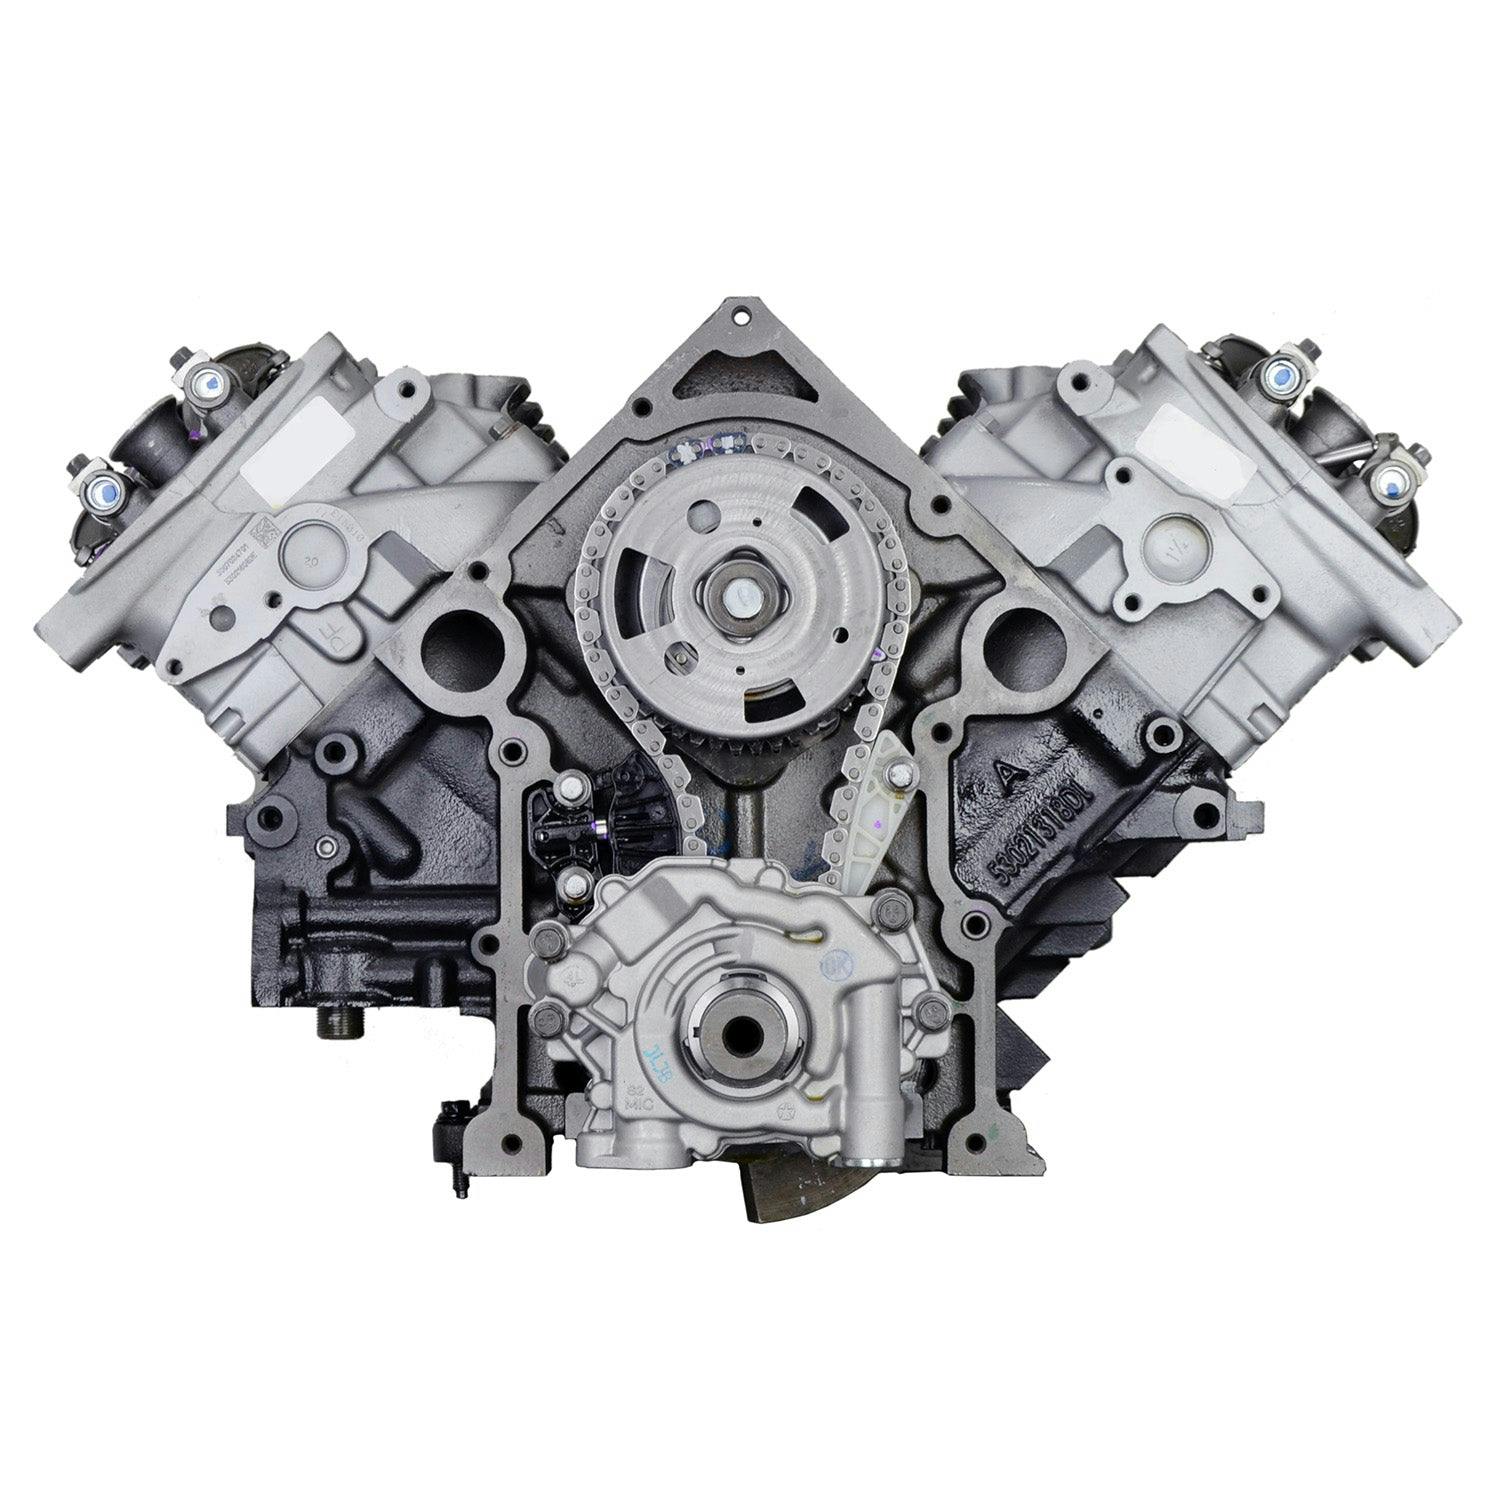 5.7L V8 Engine for 2009-2012 Dodge Challenger